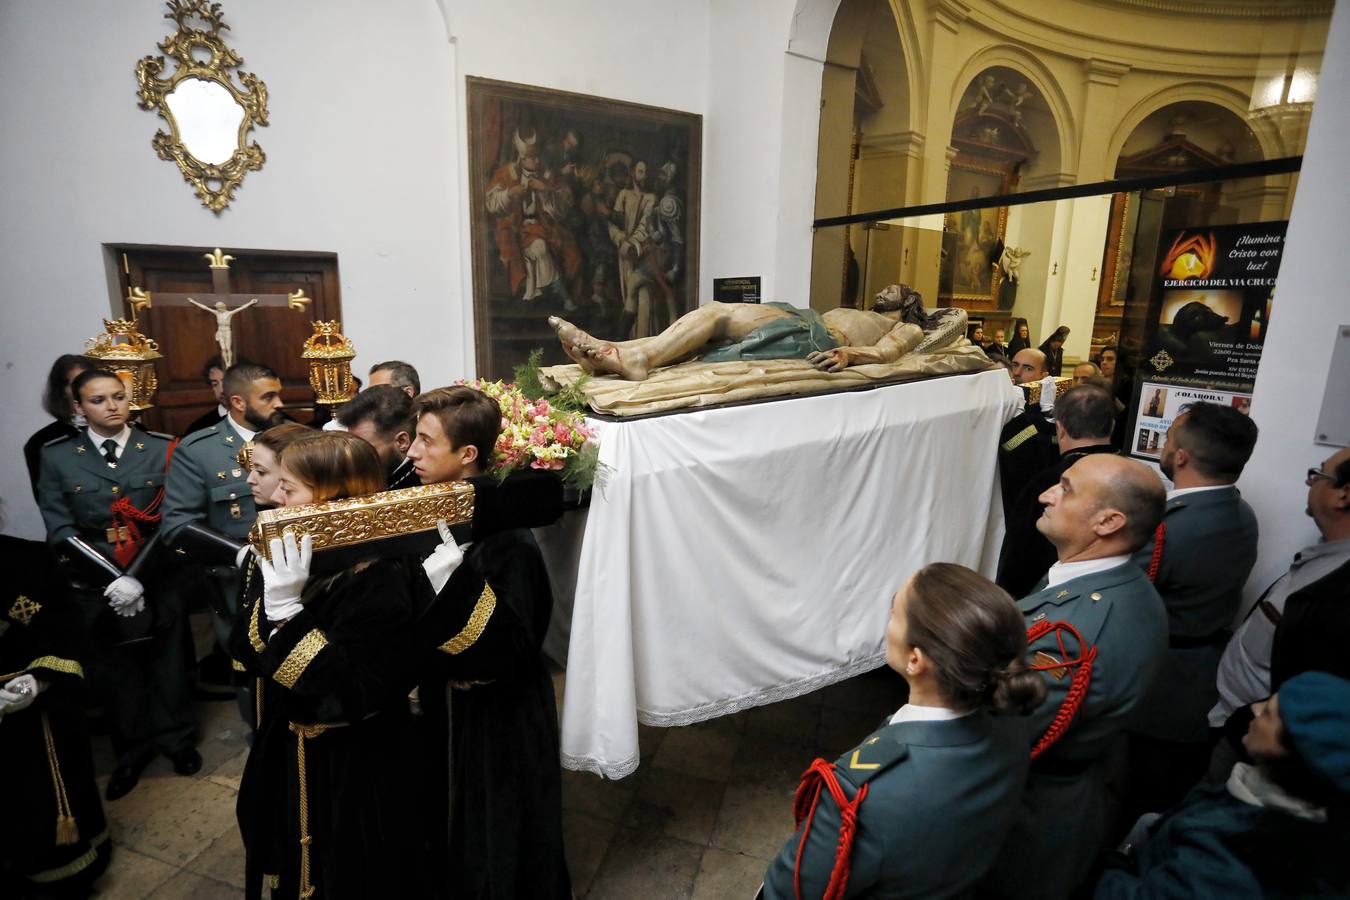 El acto se celebró dentro de la Iglesia Conventual del Real Monasterio de San Joaquín y Santa Ana, con el paso Cristo Yacente, acompañado por los cofrades del Santo Entierro